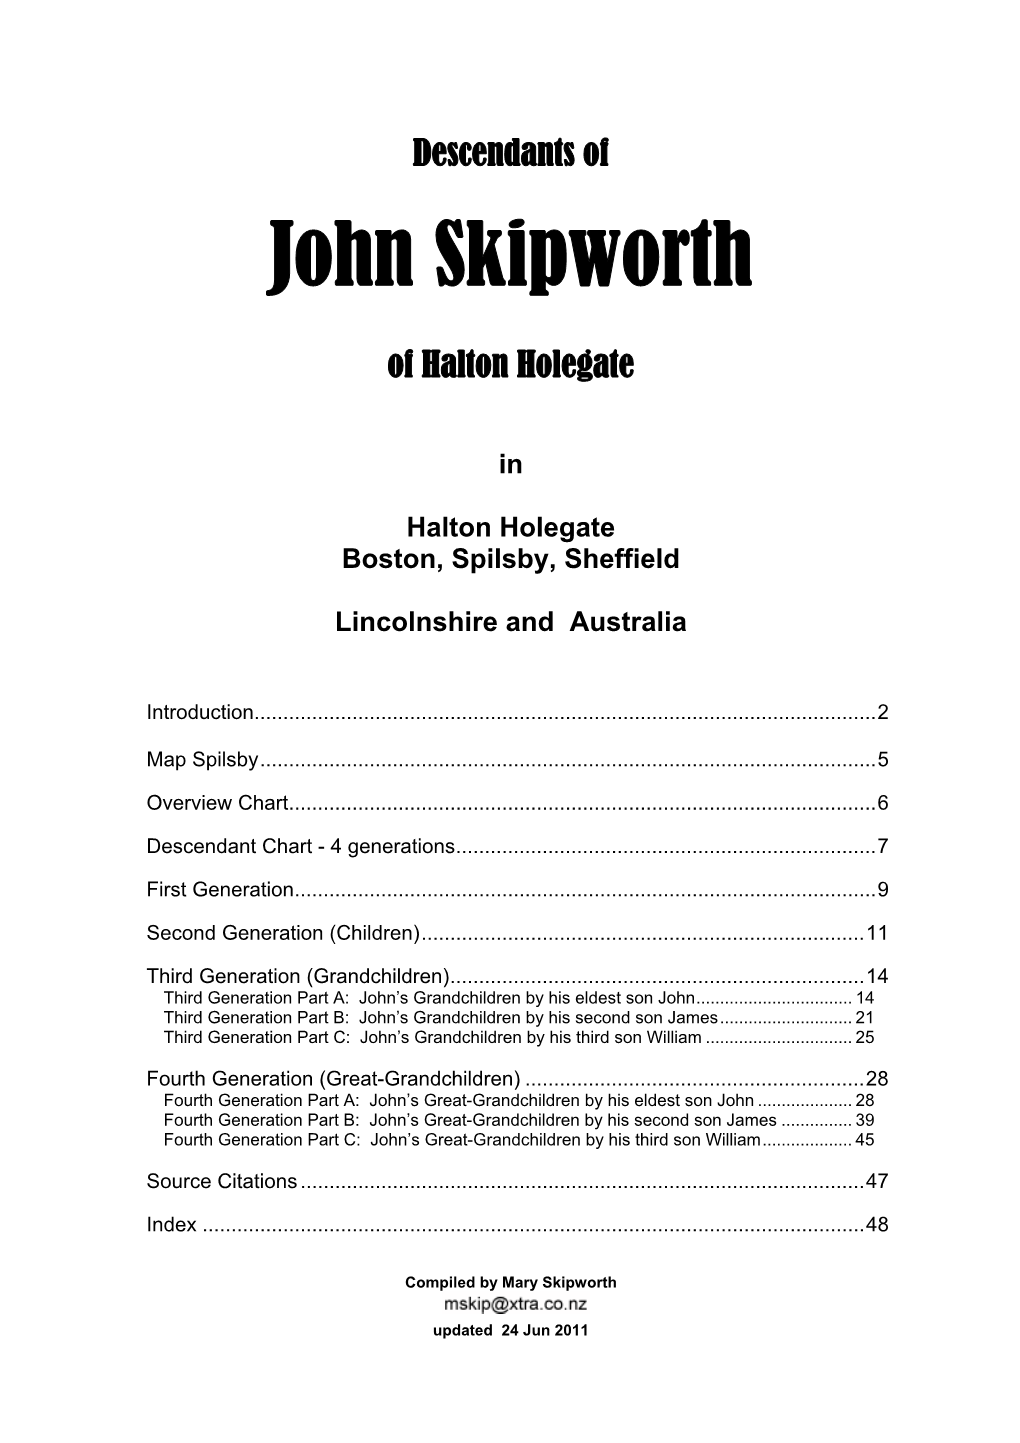 Skipworths Descended from John of Halton Holegate